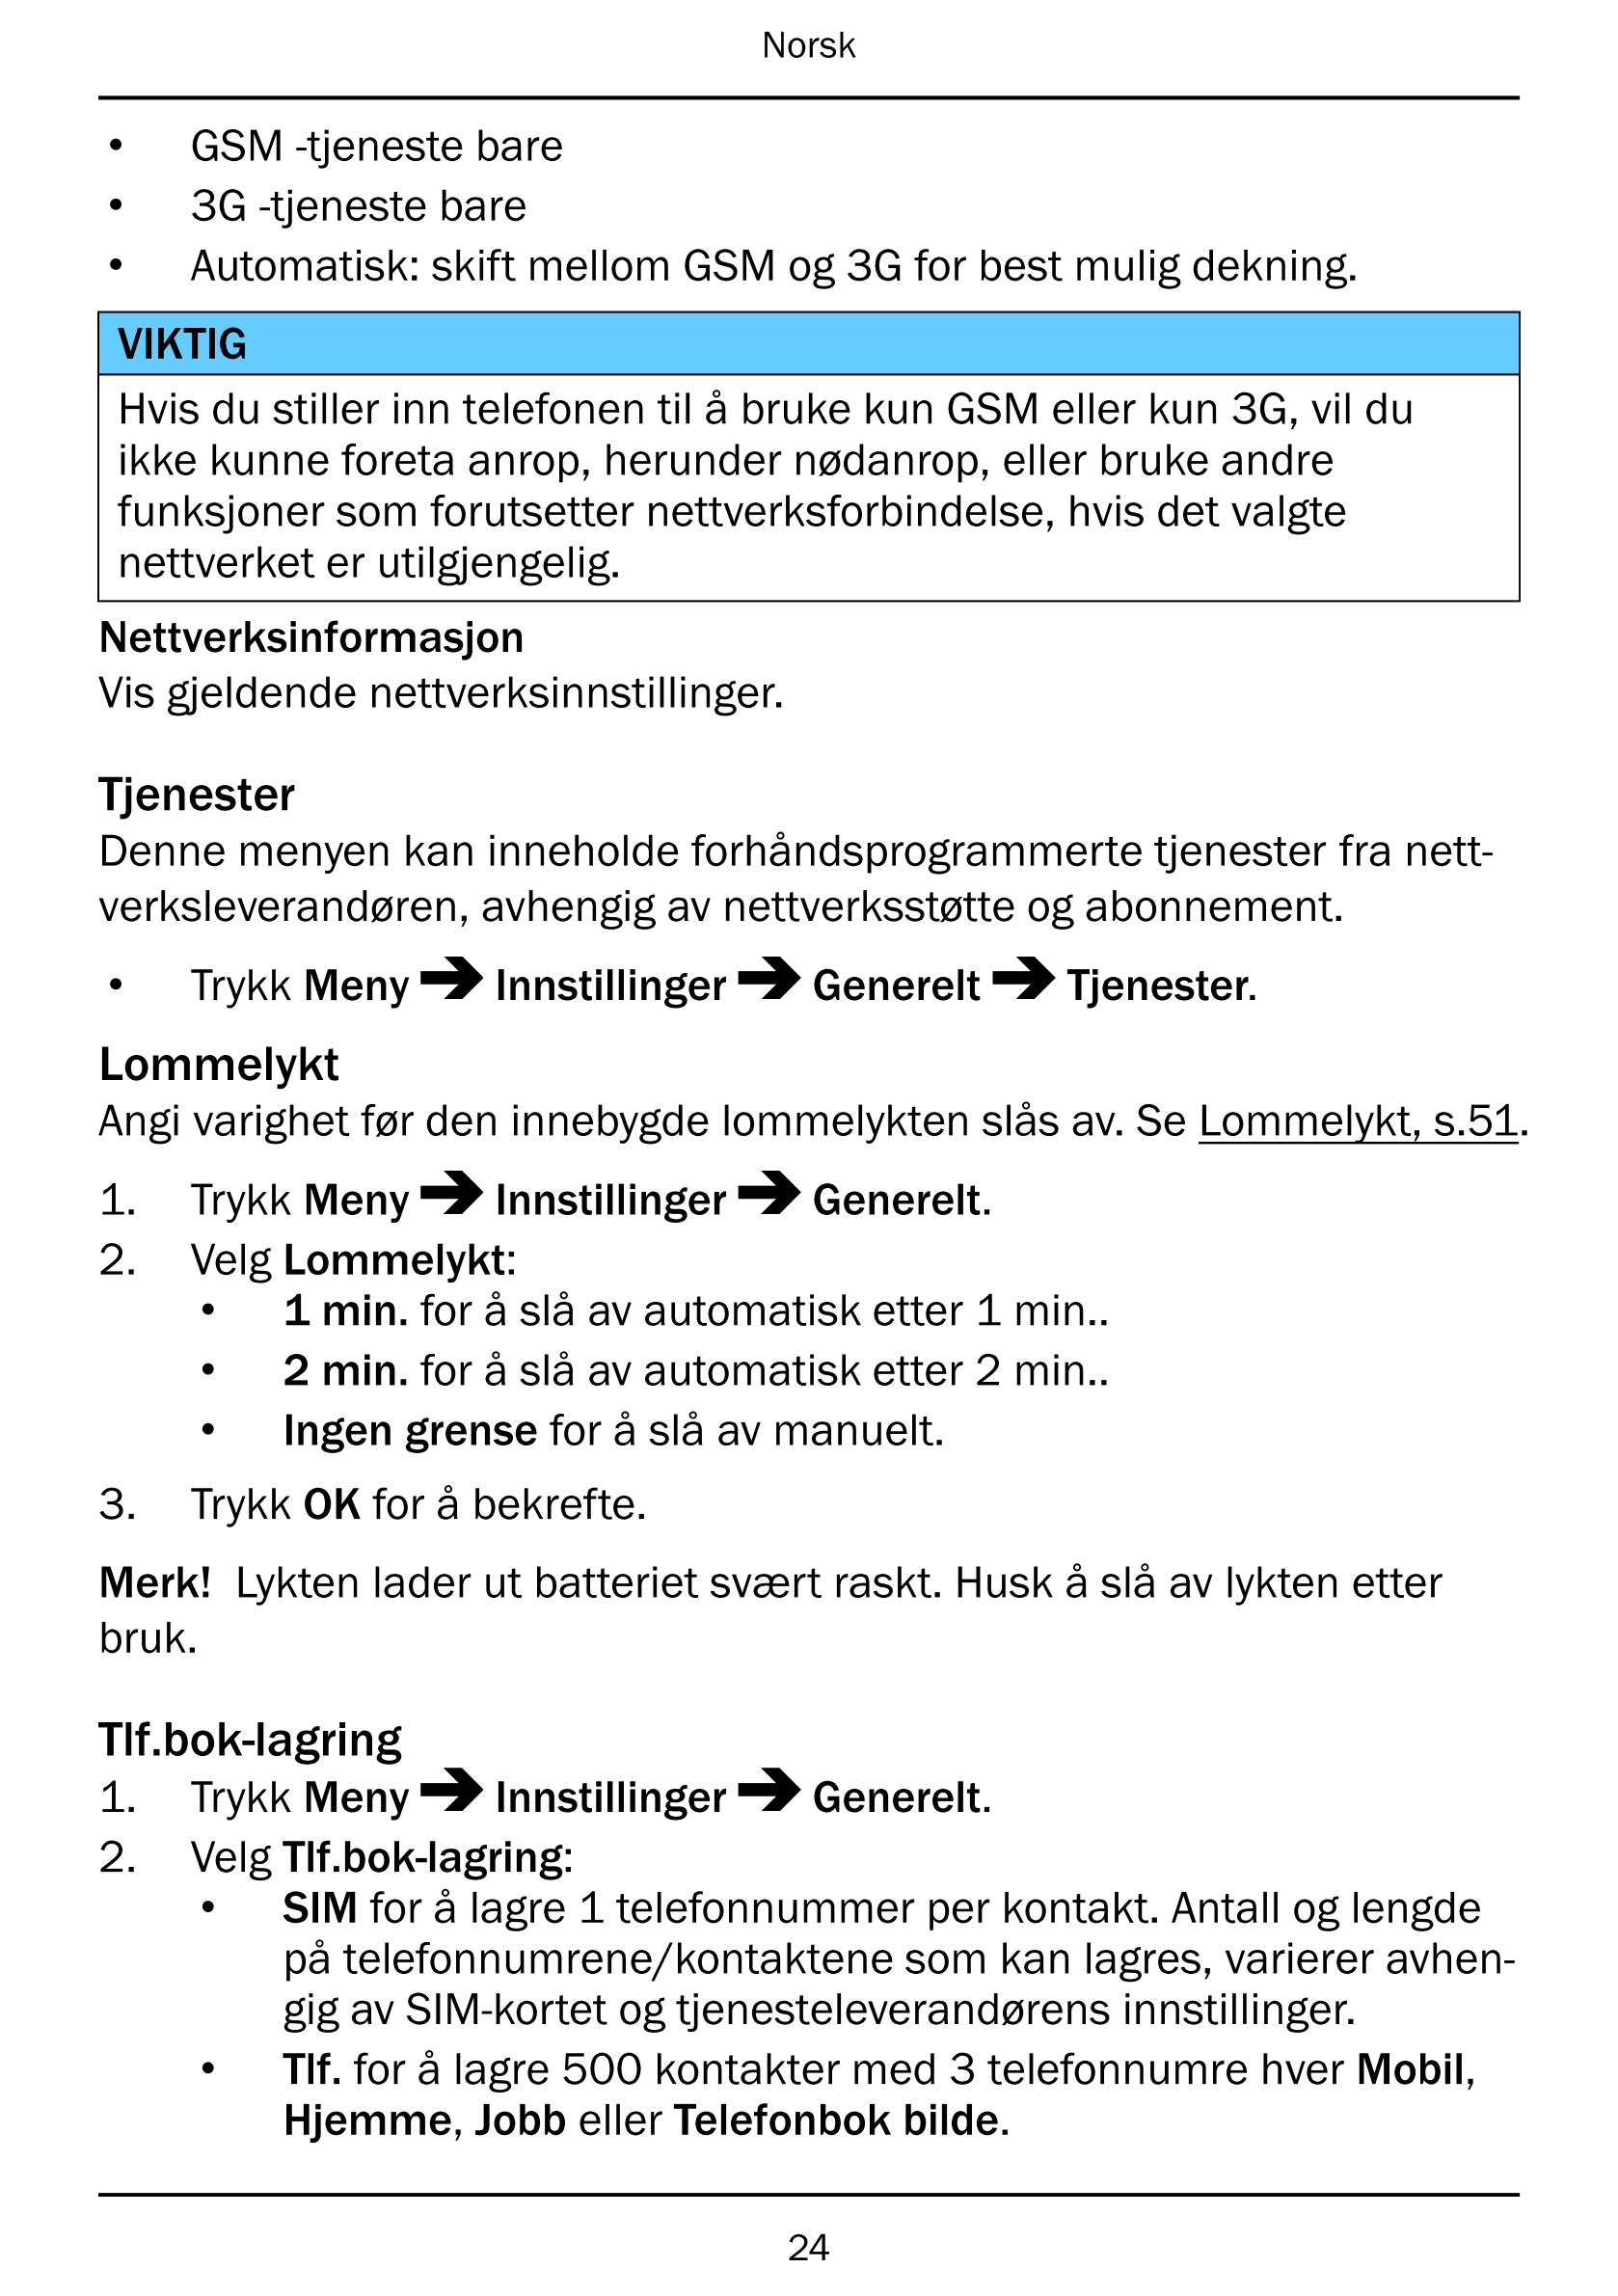 Norsk
• GSM -tjeneste bare
• 3G -tjeneste bare
• Automatisk: skift mellom GSM og 3G for best mulig dekning.
VIKTIG
Hvis du still